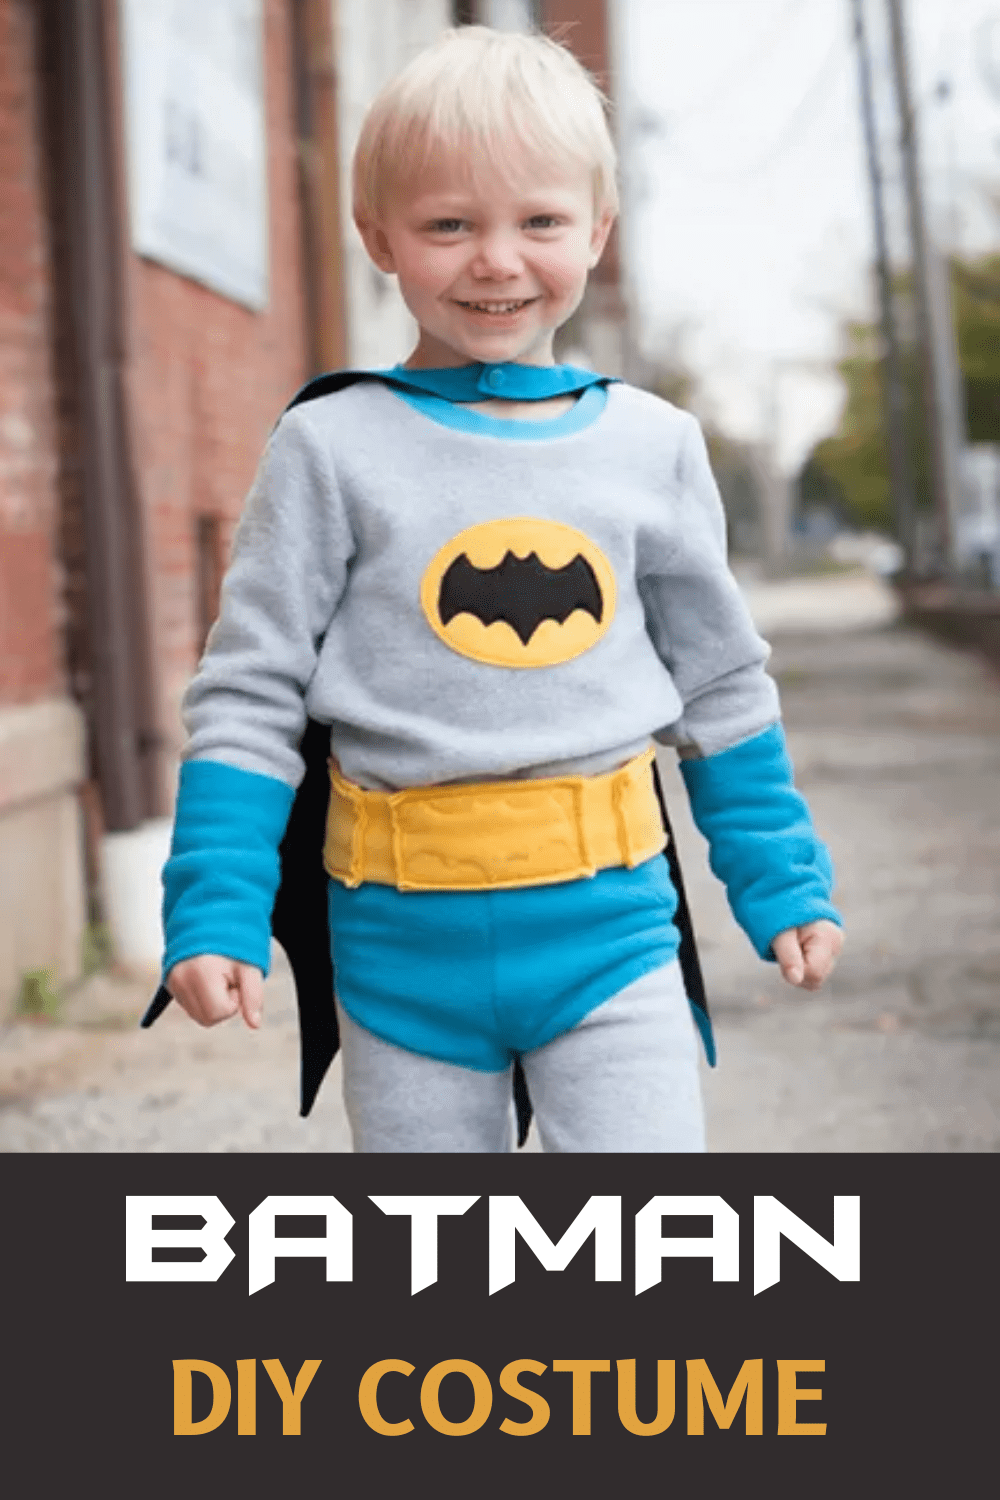 DIY Batman Costume for Kids